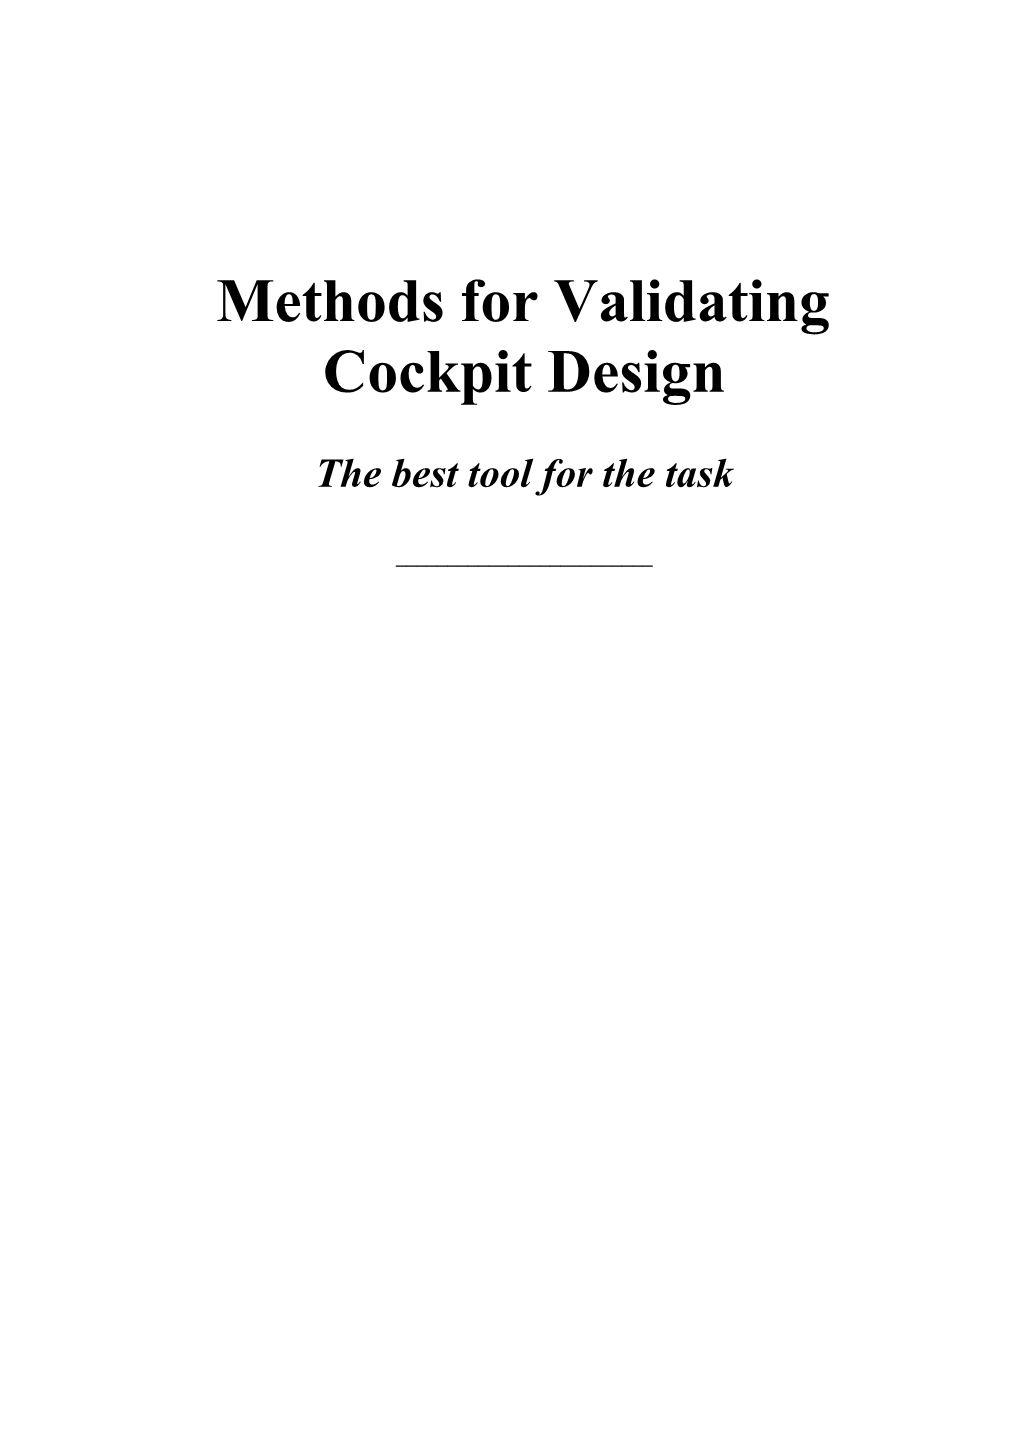 Methods for Validating Cockpit Design